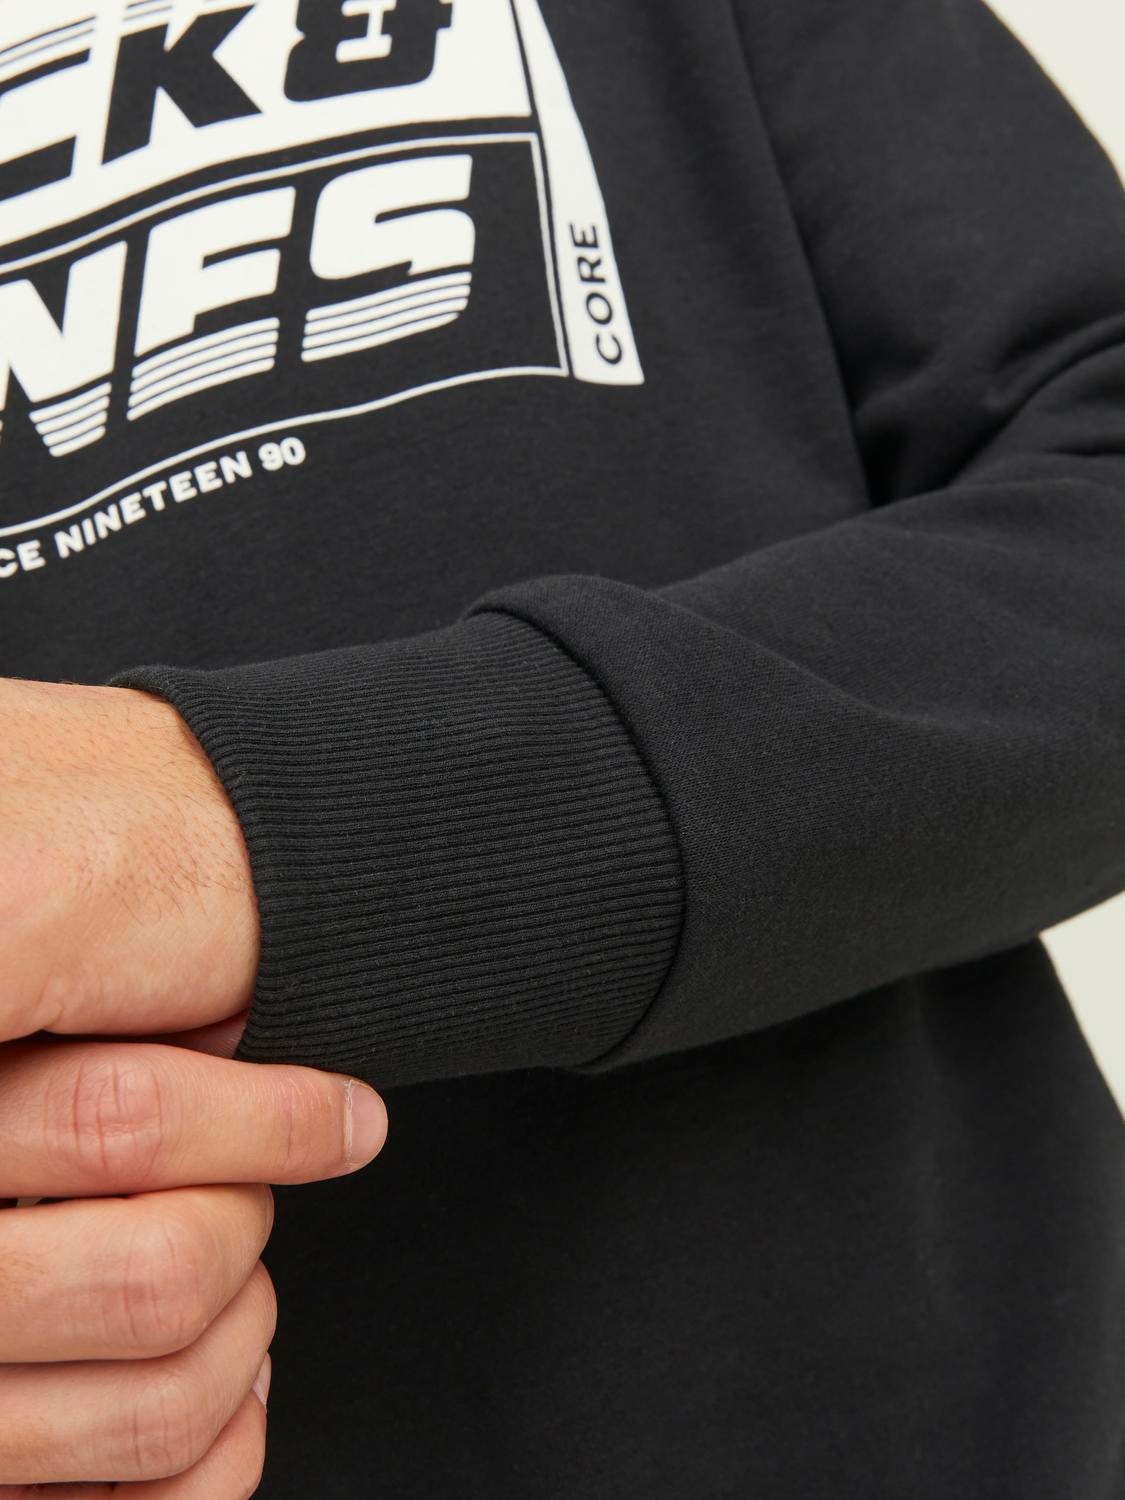 Jack & Jones Logo Sweatshirt met ronde hals -Black - 12243922